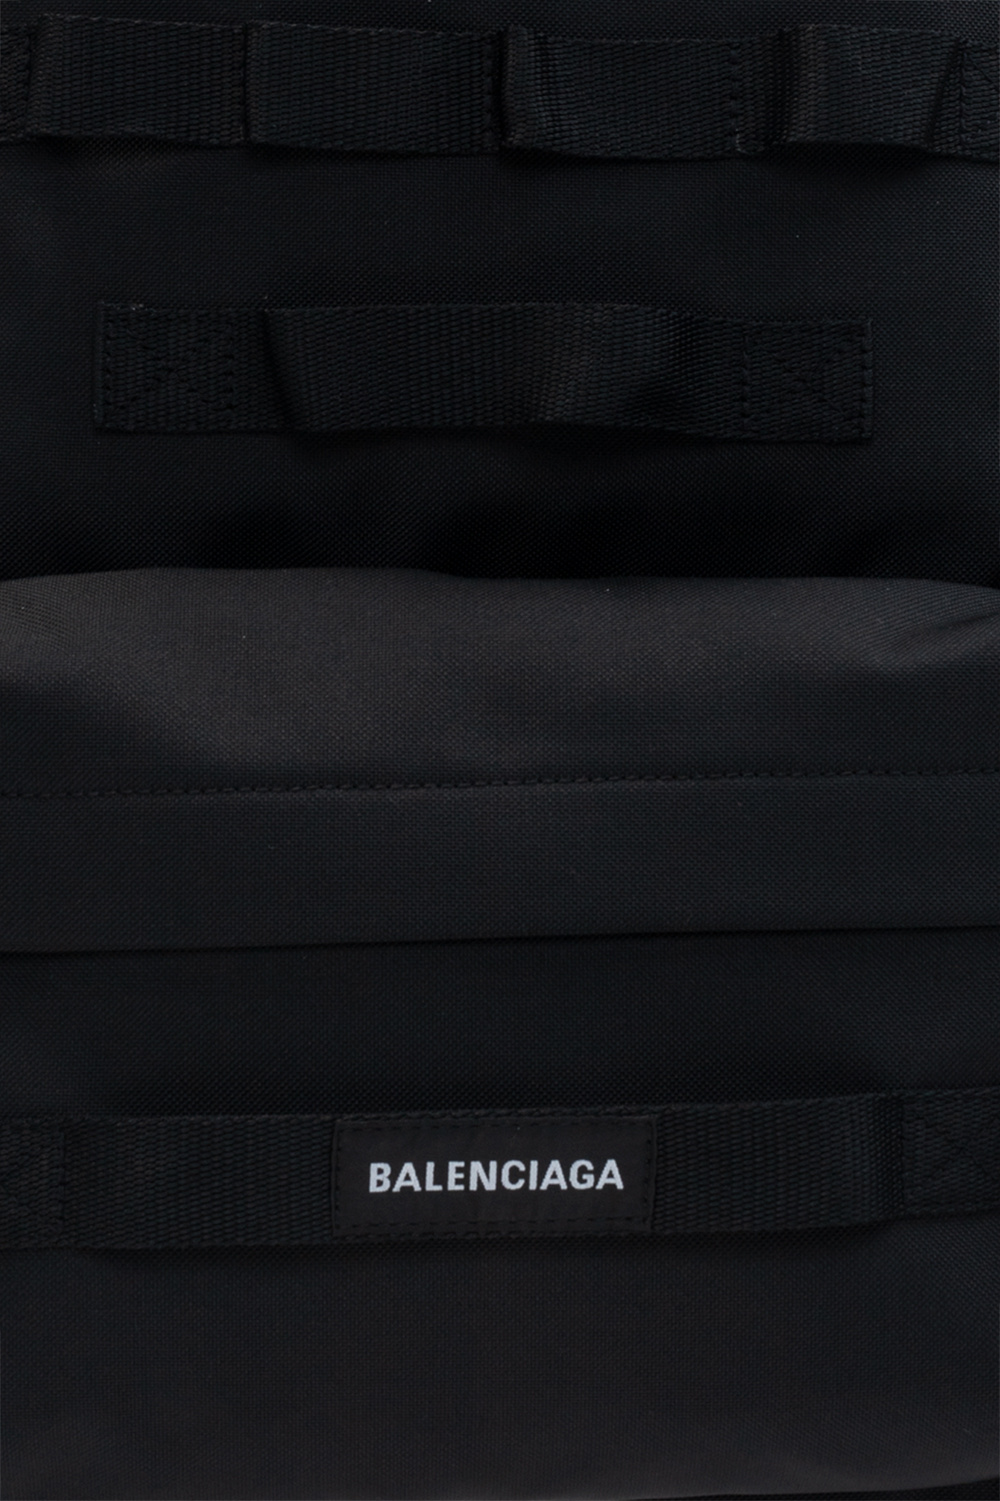 Backpack With Logo Balenciaga Adefra Us - roblox balenciaga no one